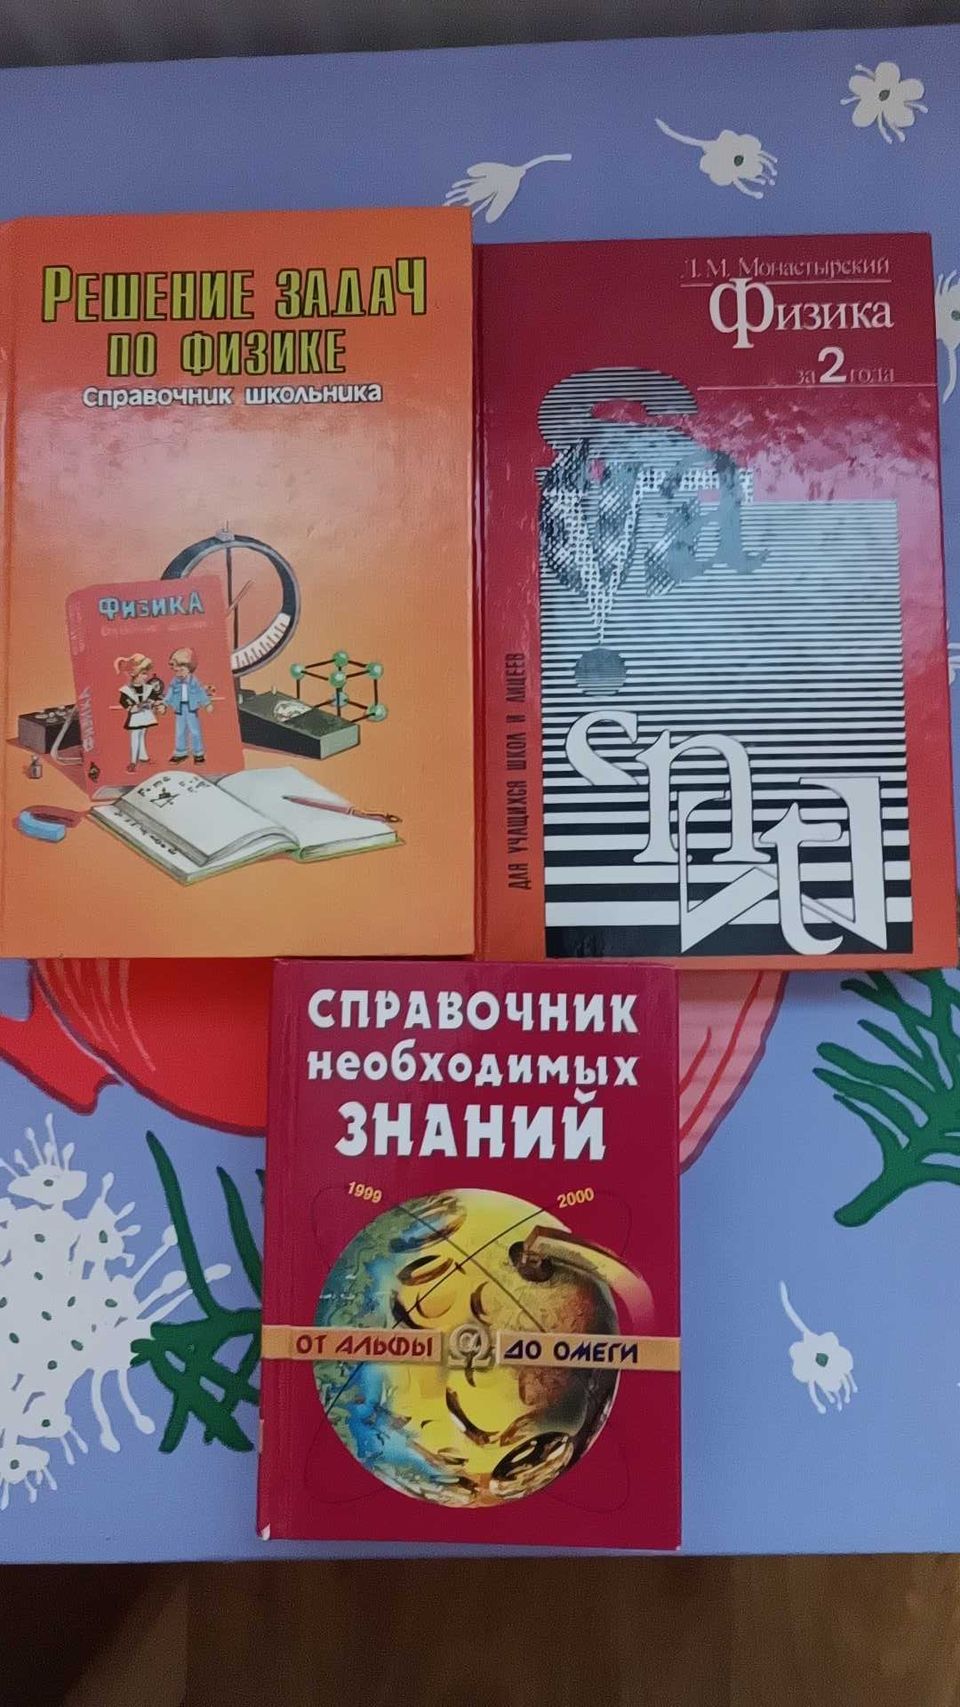 Venäjänkieliset oppikirjat settinä